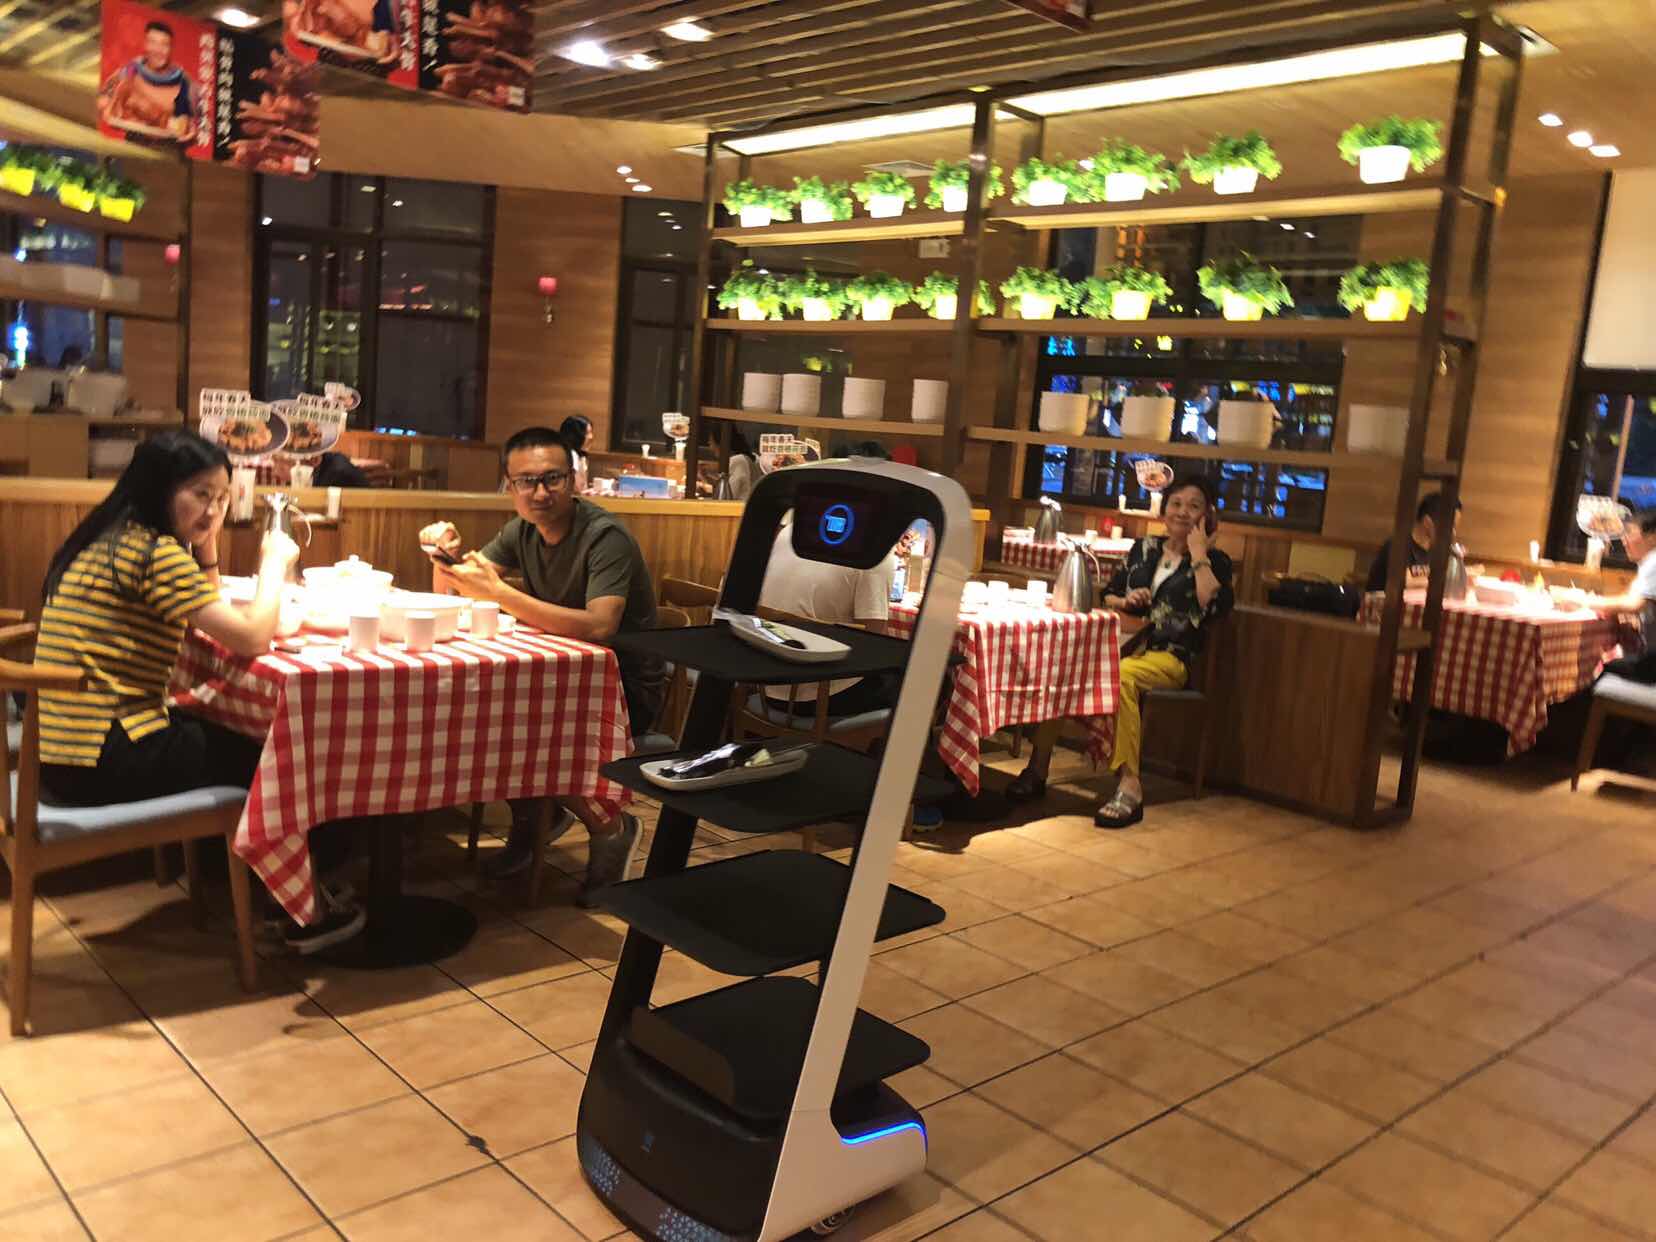 杭州机器人餐厅图片